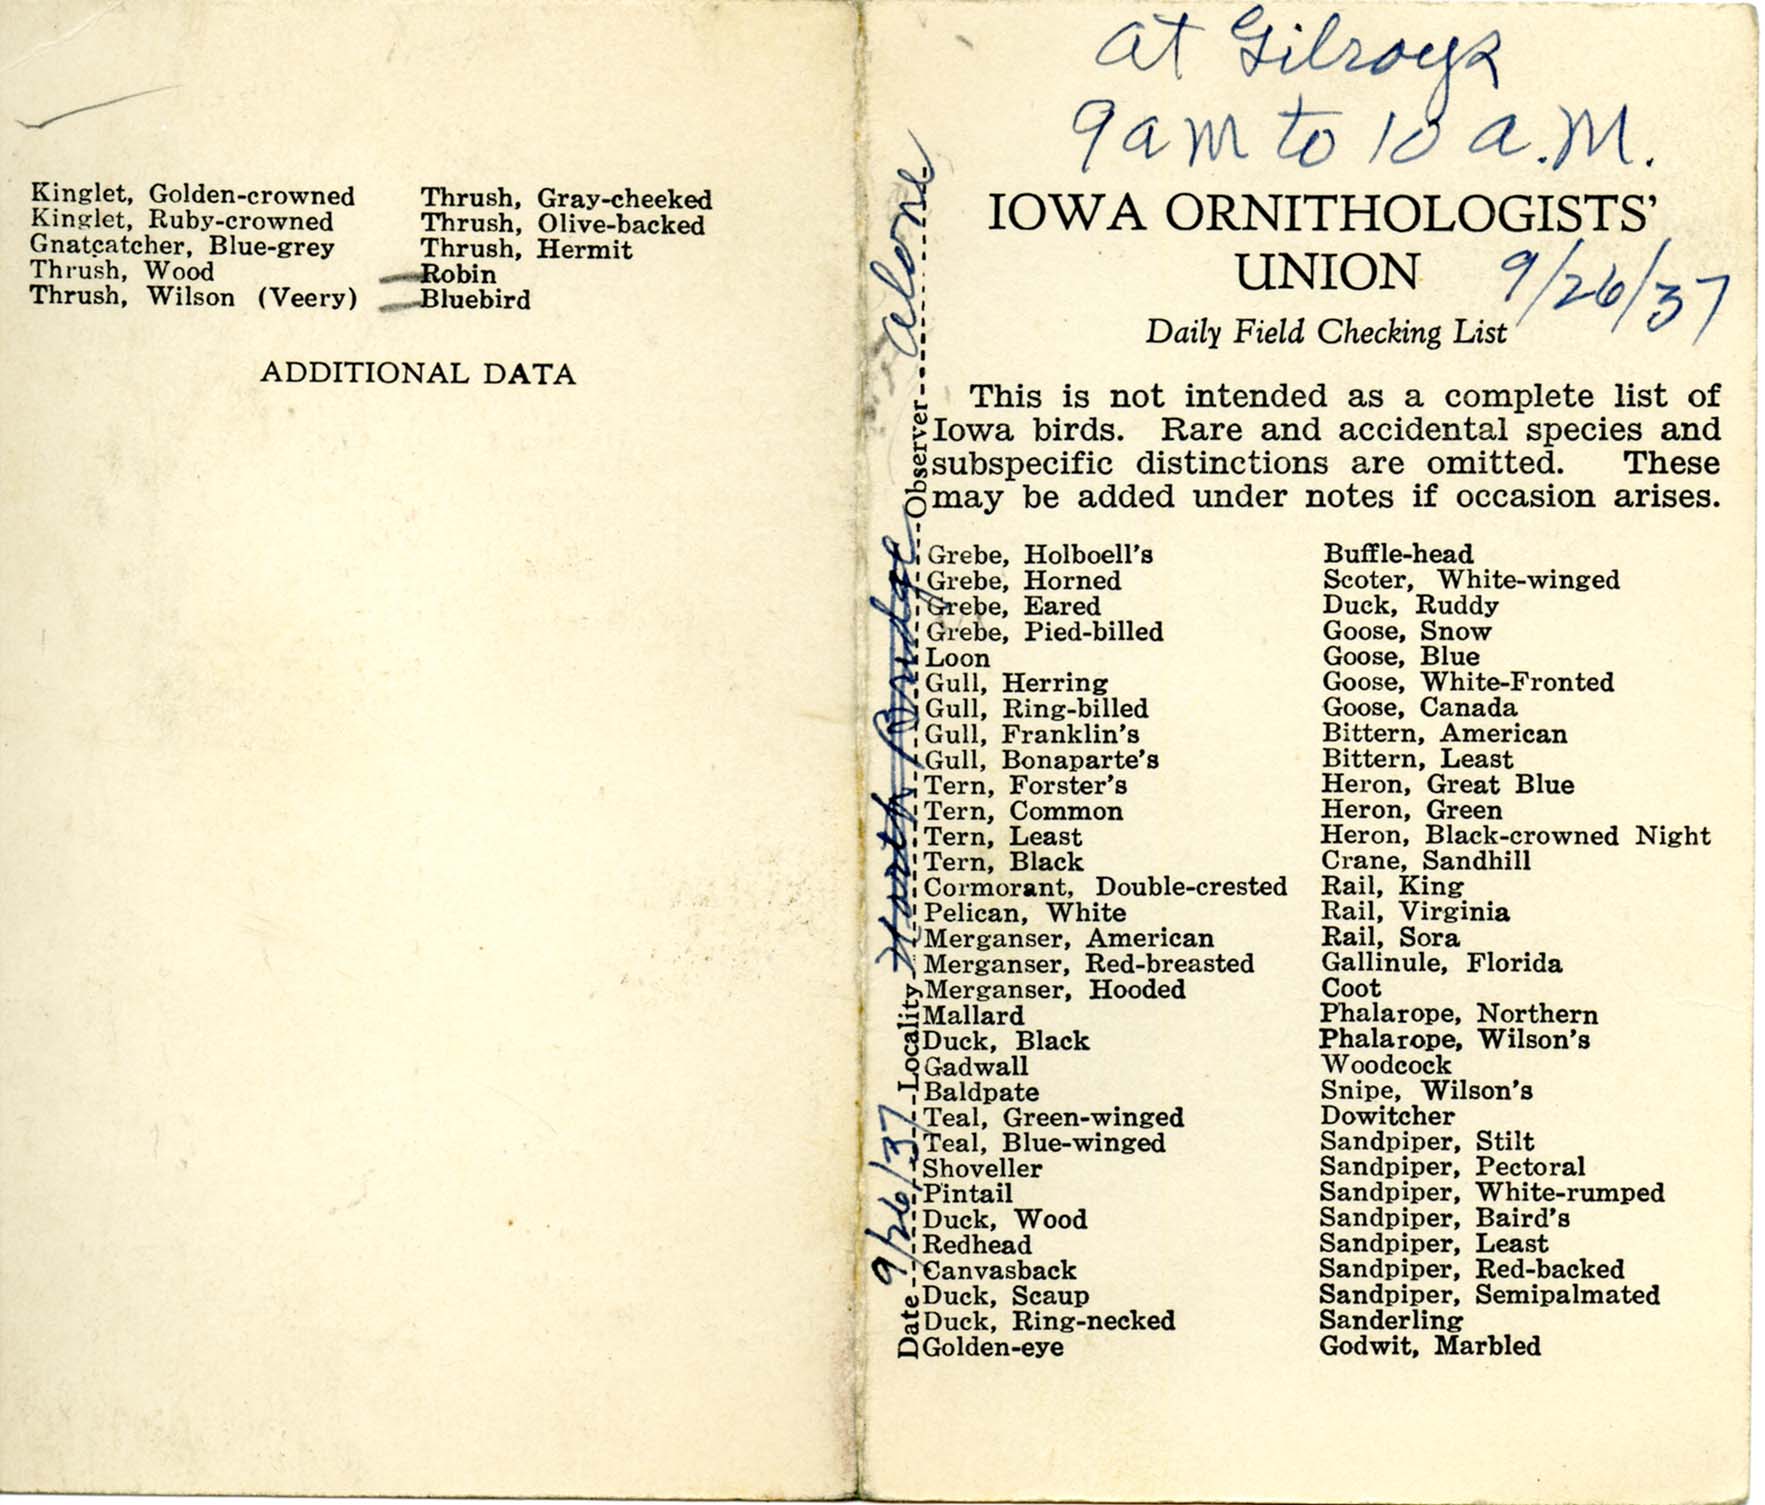 Daily field checking list by Walter Rosene, September 26, 1937